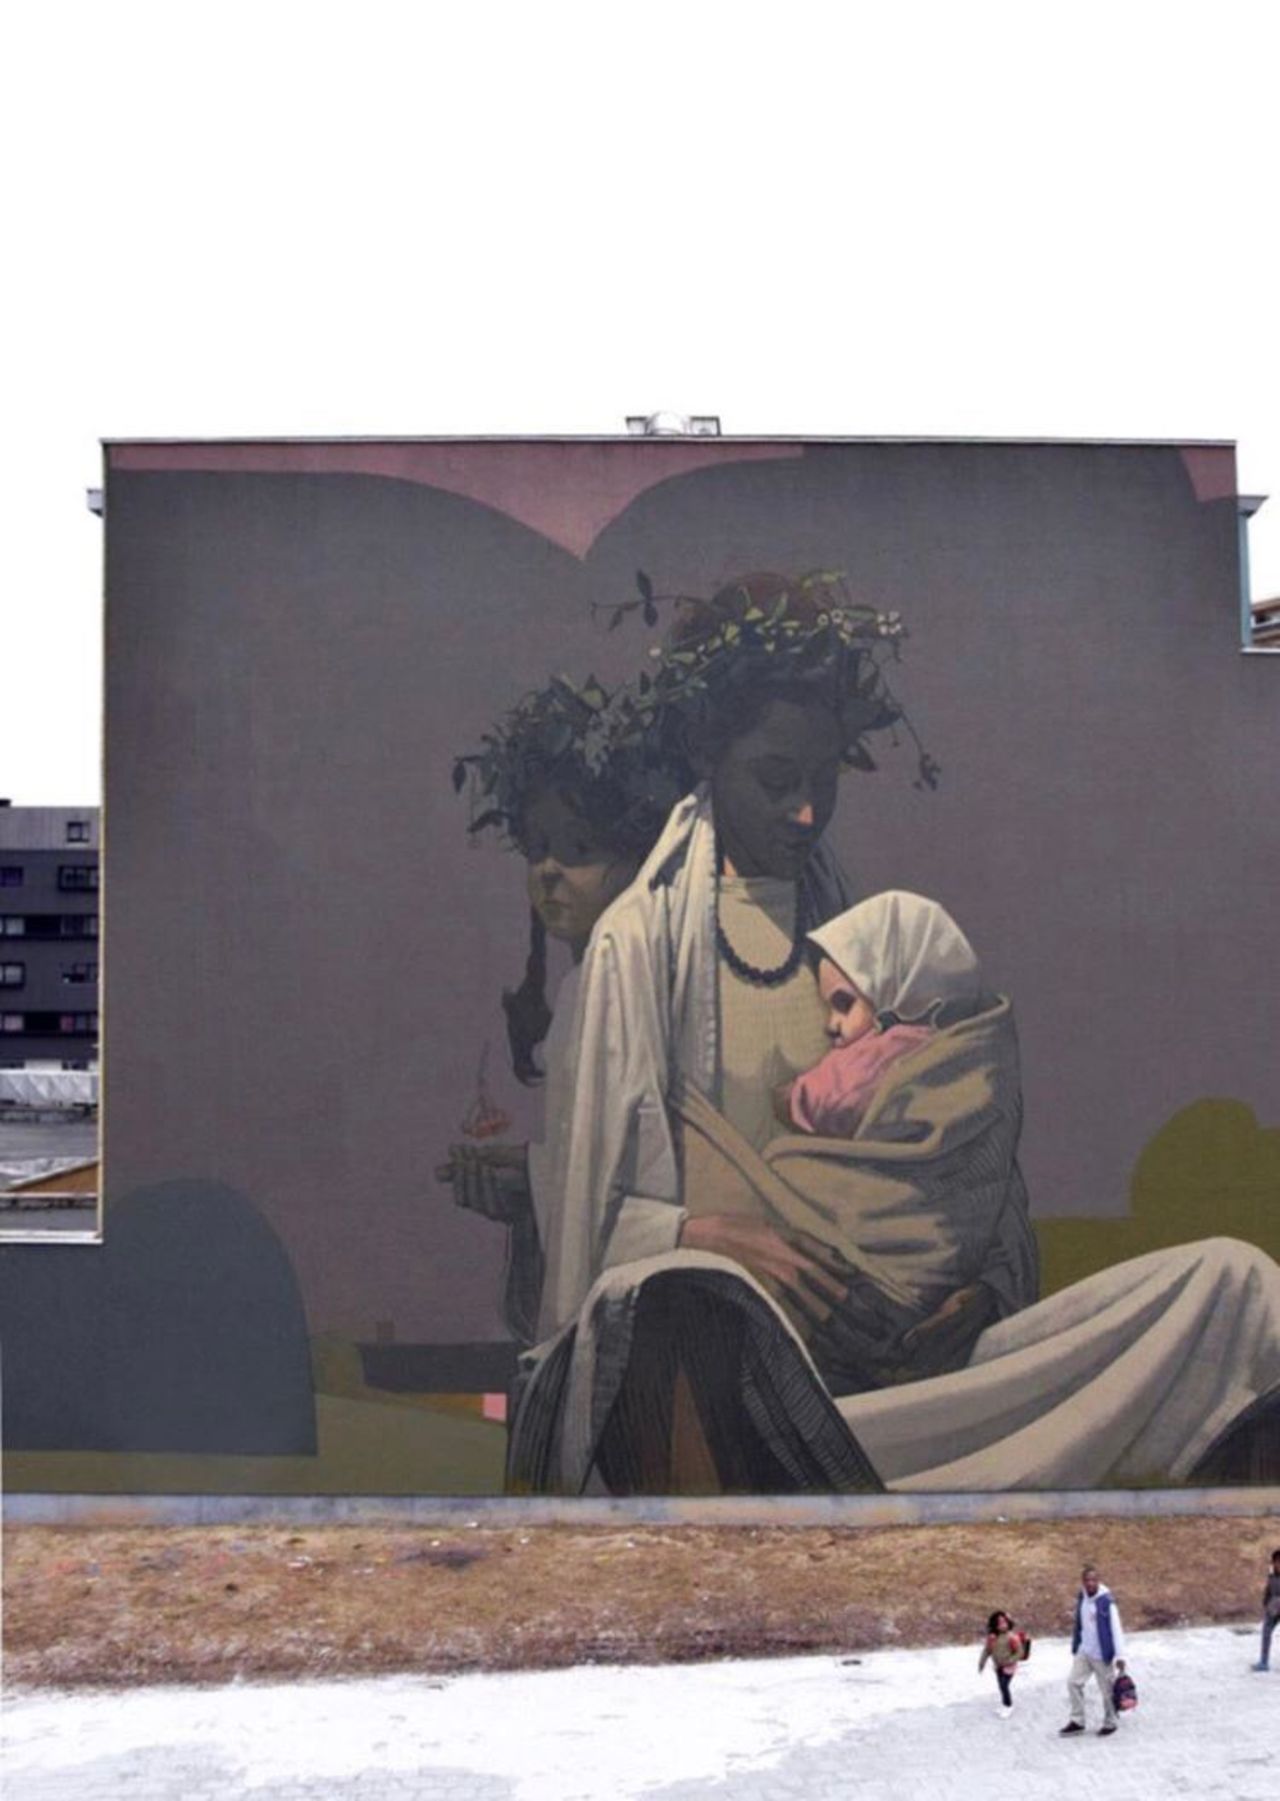 New work by ETAM SAINER #streetart #mural #graffiti #art https://t.co/OO5pI0KaRe